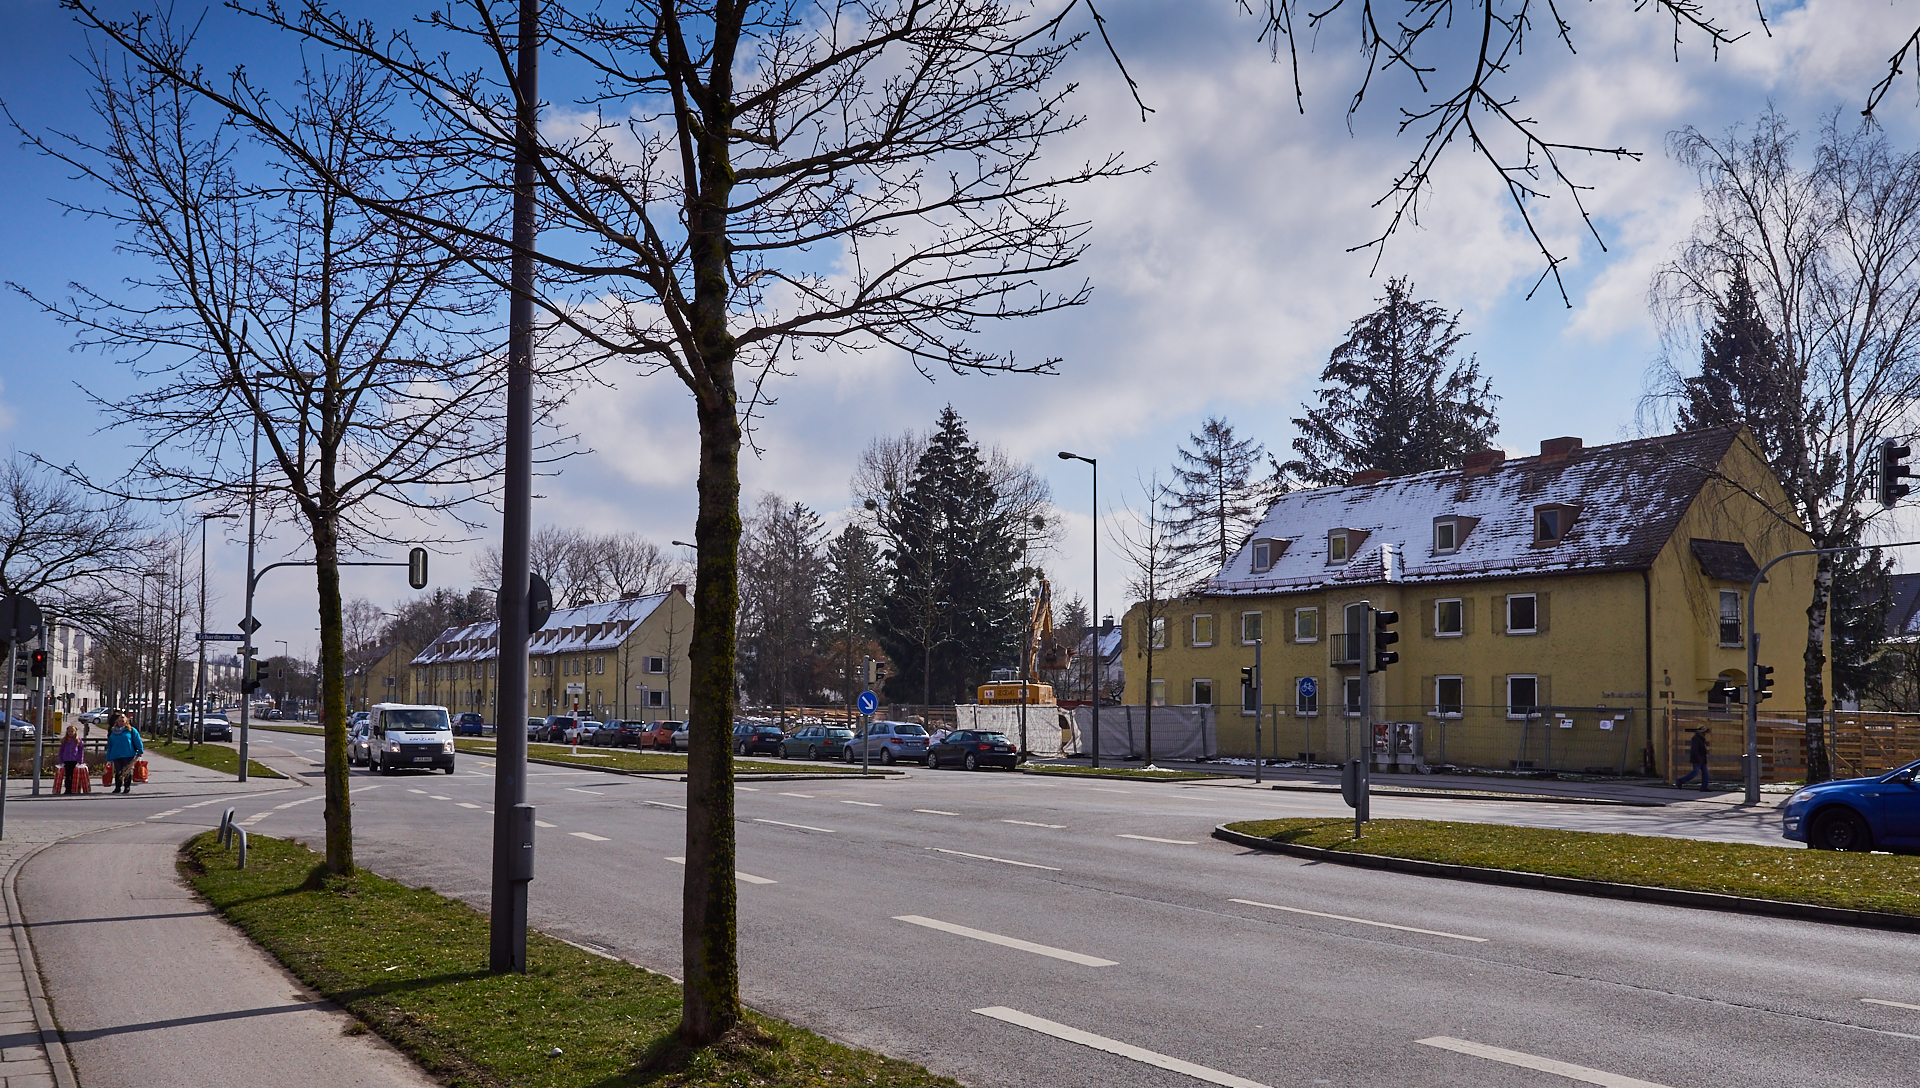 Neuperlach-maikaefersiedlung am 16.03.2016